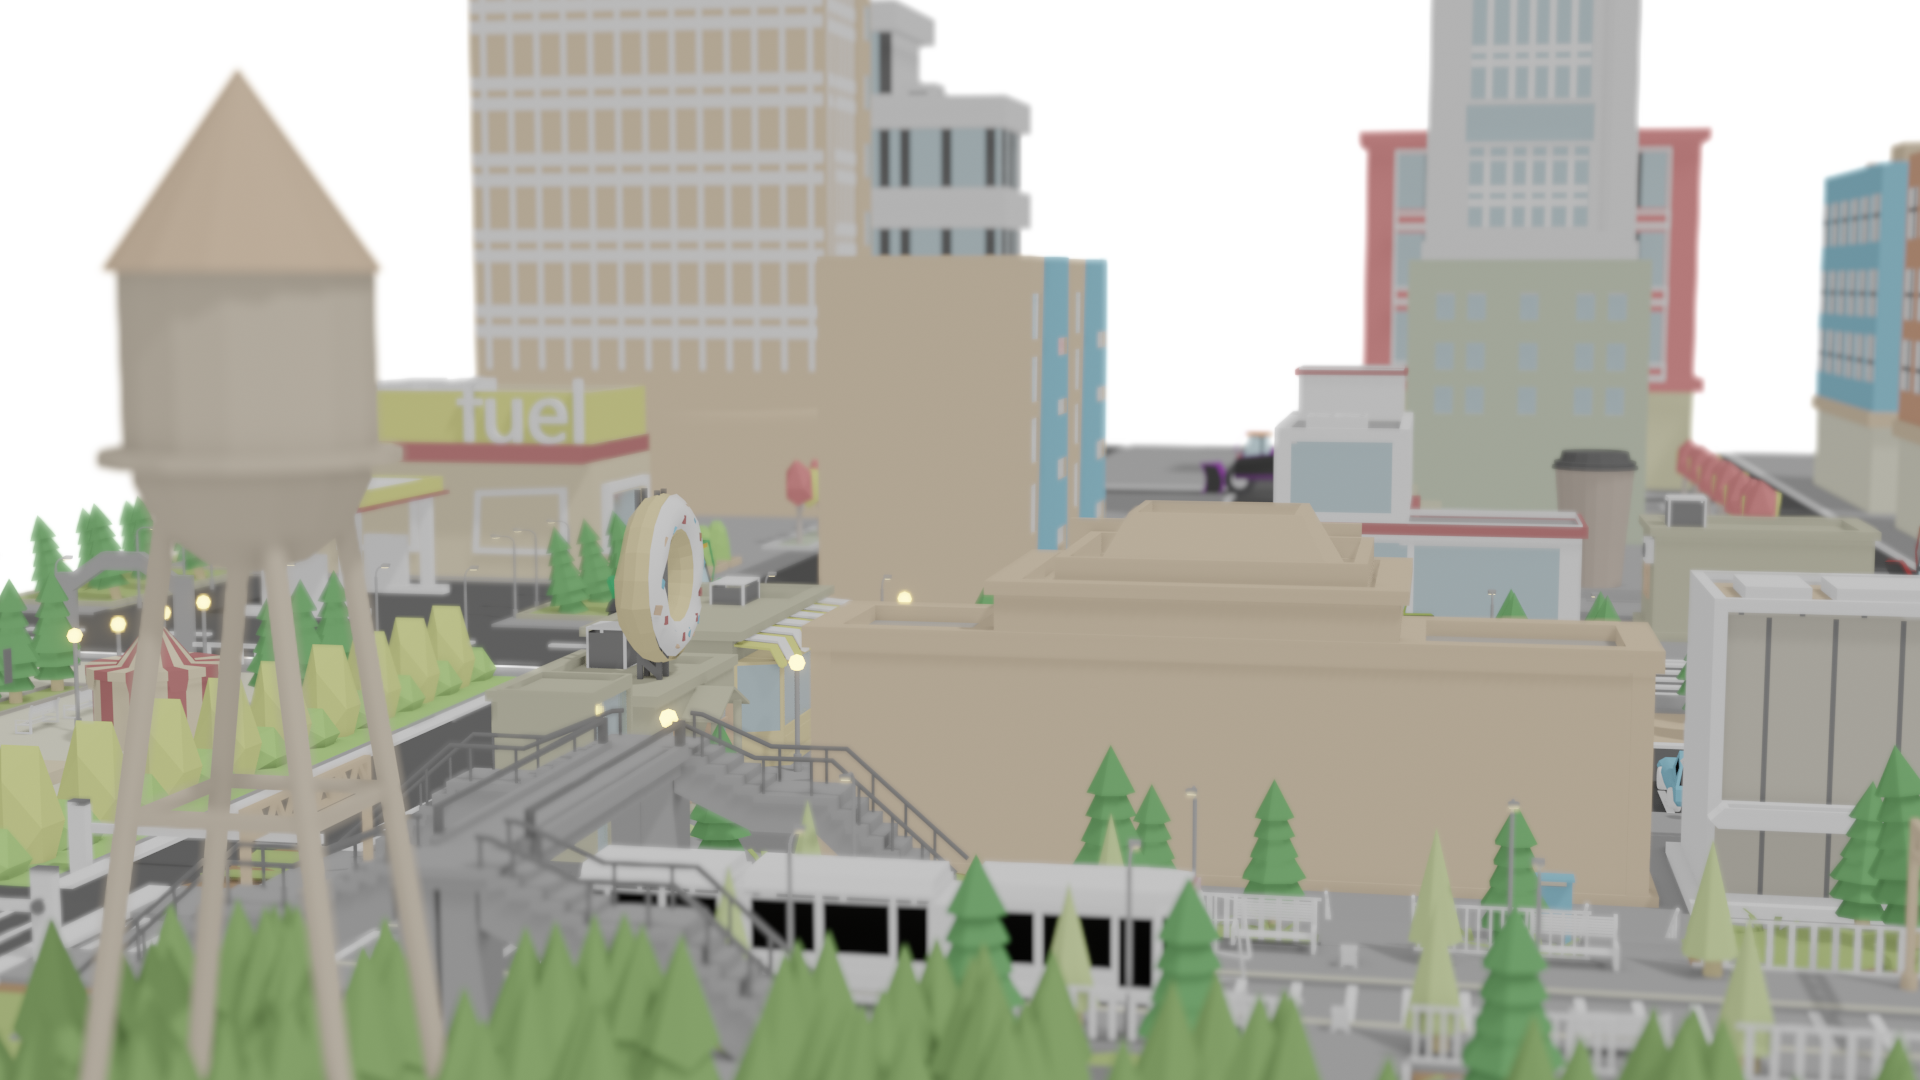 Démonstration de l'utilisation d'un serious game : virtualisation d'une ville